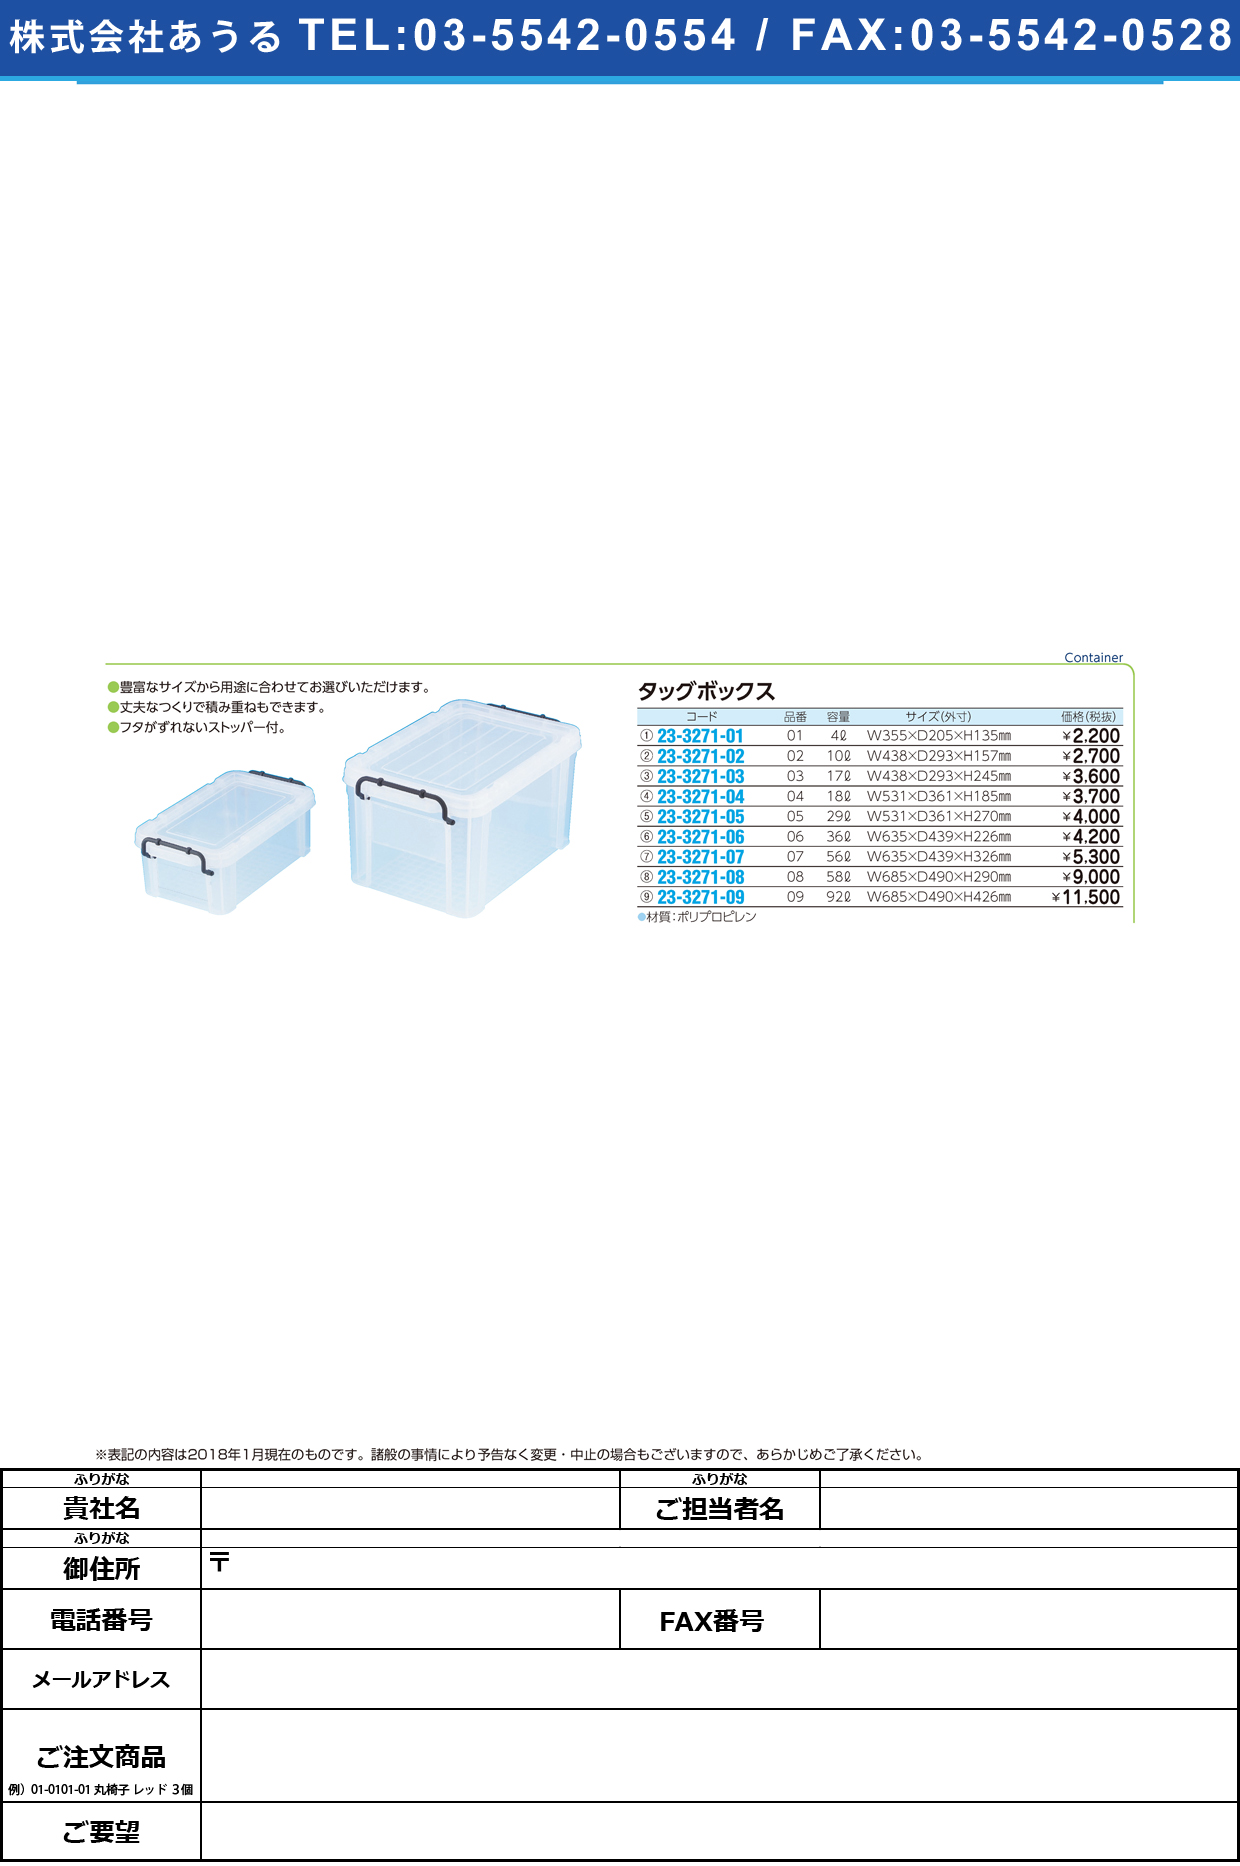 (23-3271-06)タッグボックス 06(36L) ﾀｯｸﾞﾎﾞｯｸｽ【1個単位】【2019年カタログ商品】